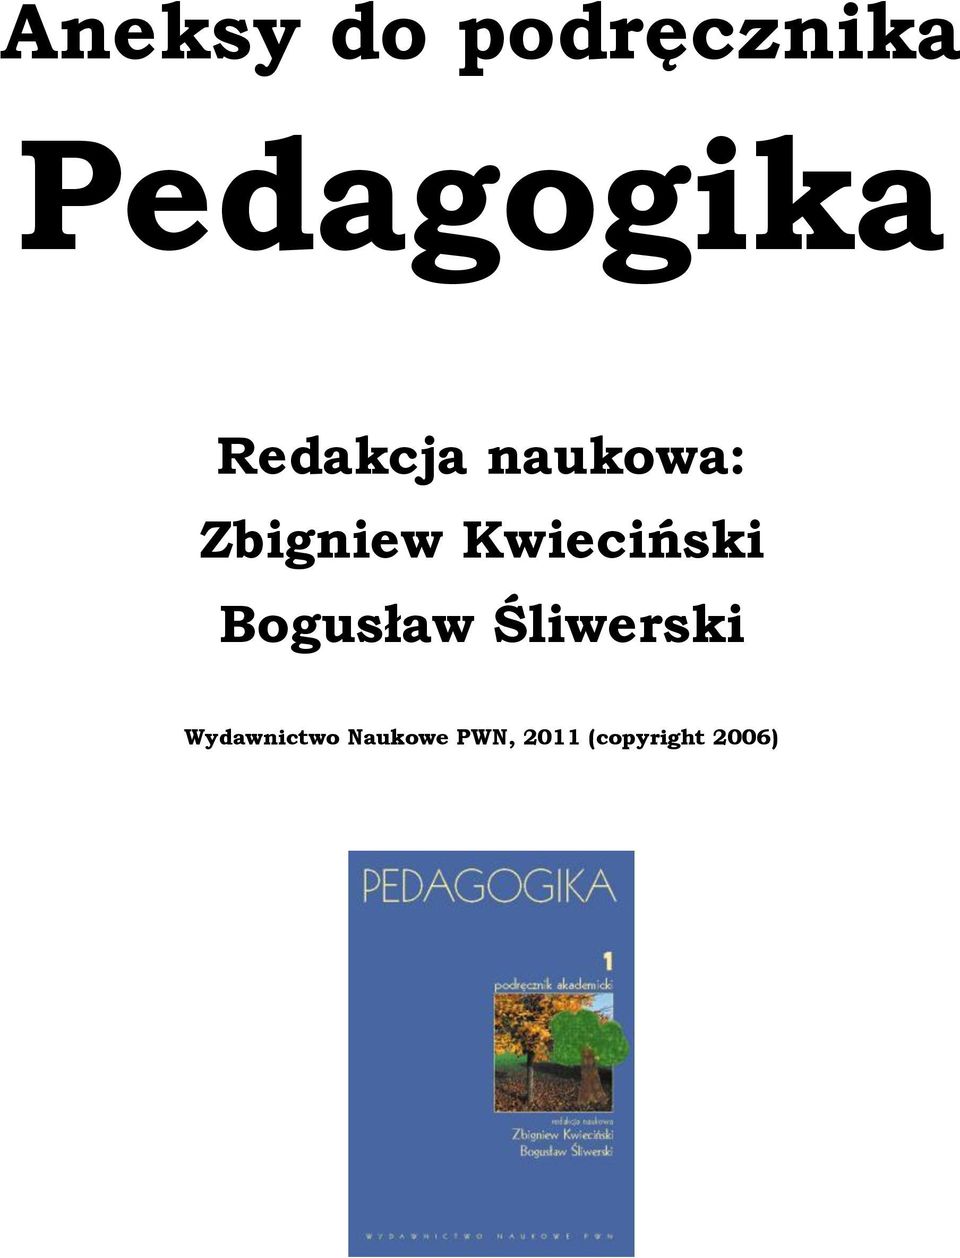 Kwieciński Bogusław Śliwerski